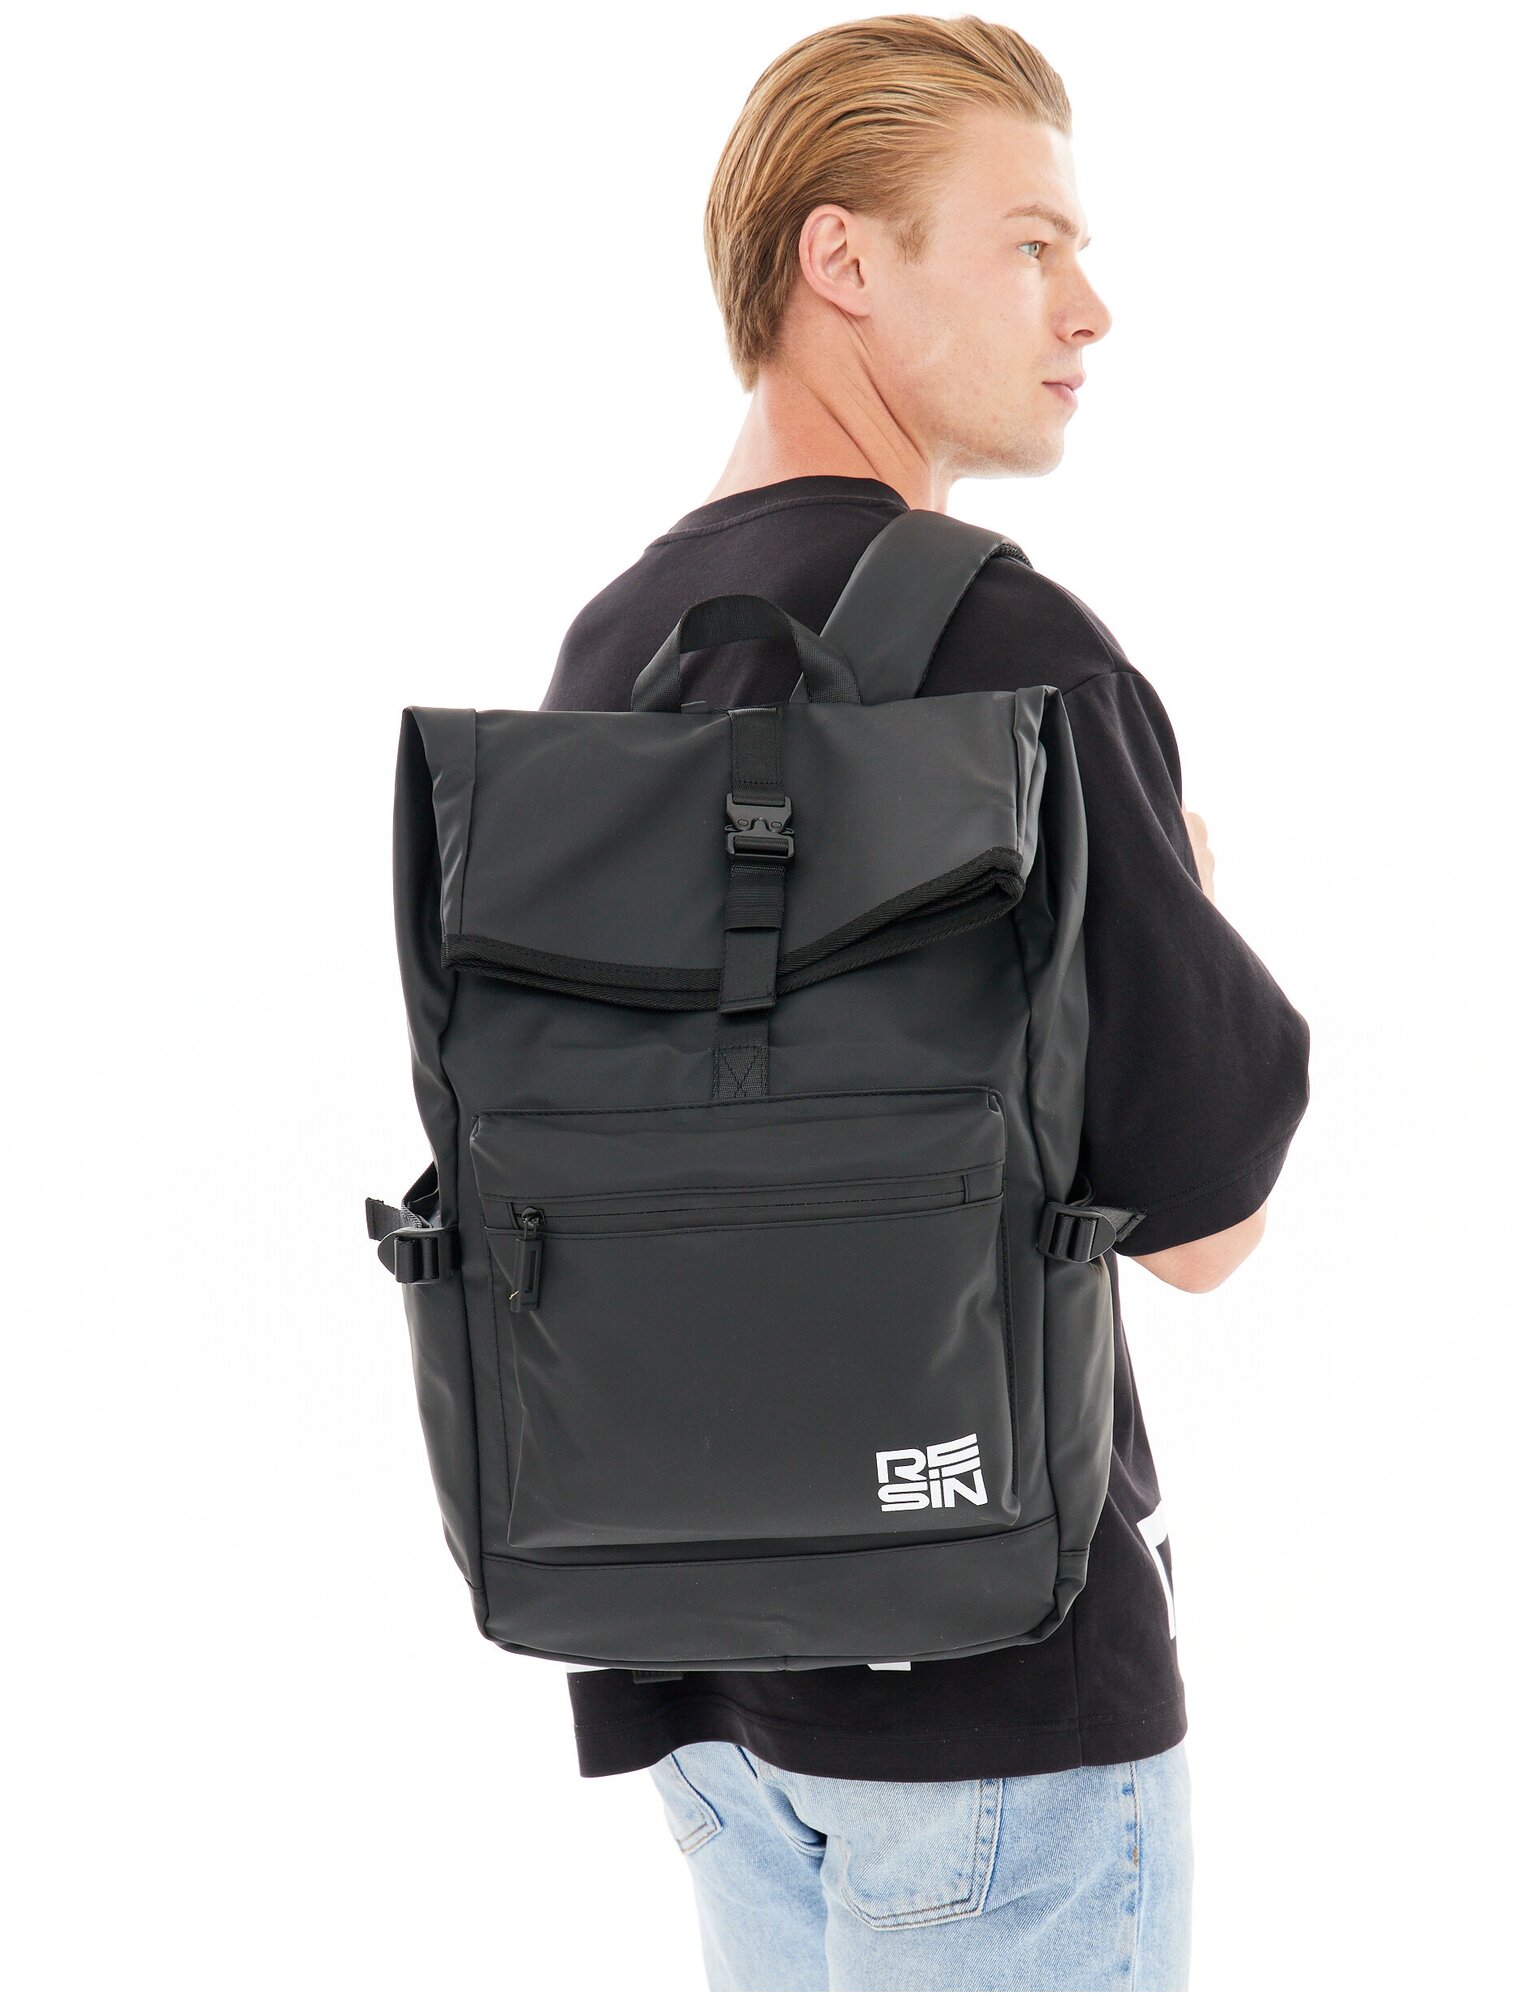 Рюкзак женский / мужской спортивный городской  для ноутбука  спортивная сумка  школьный большой